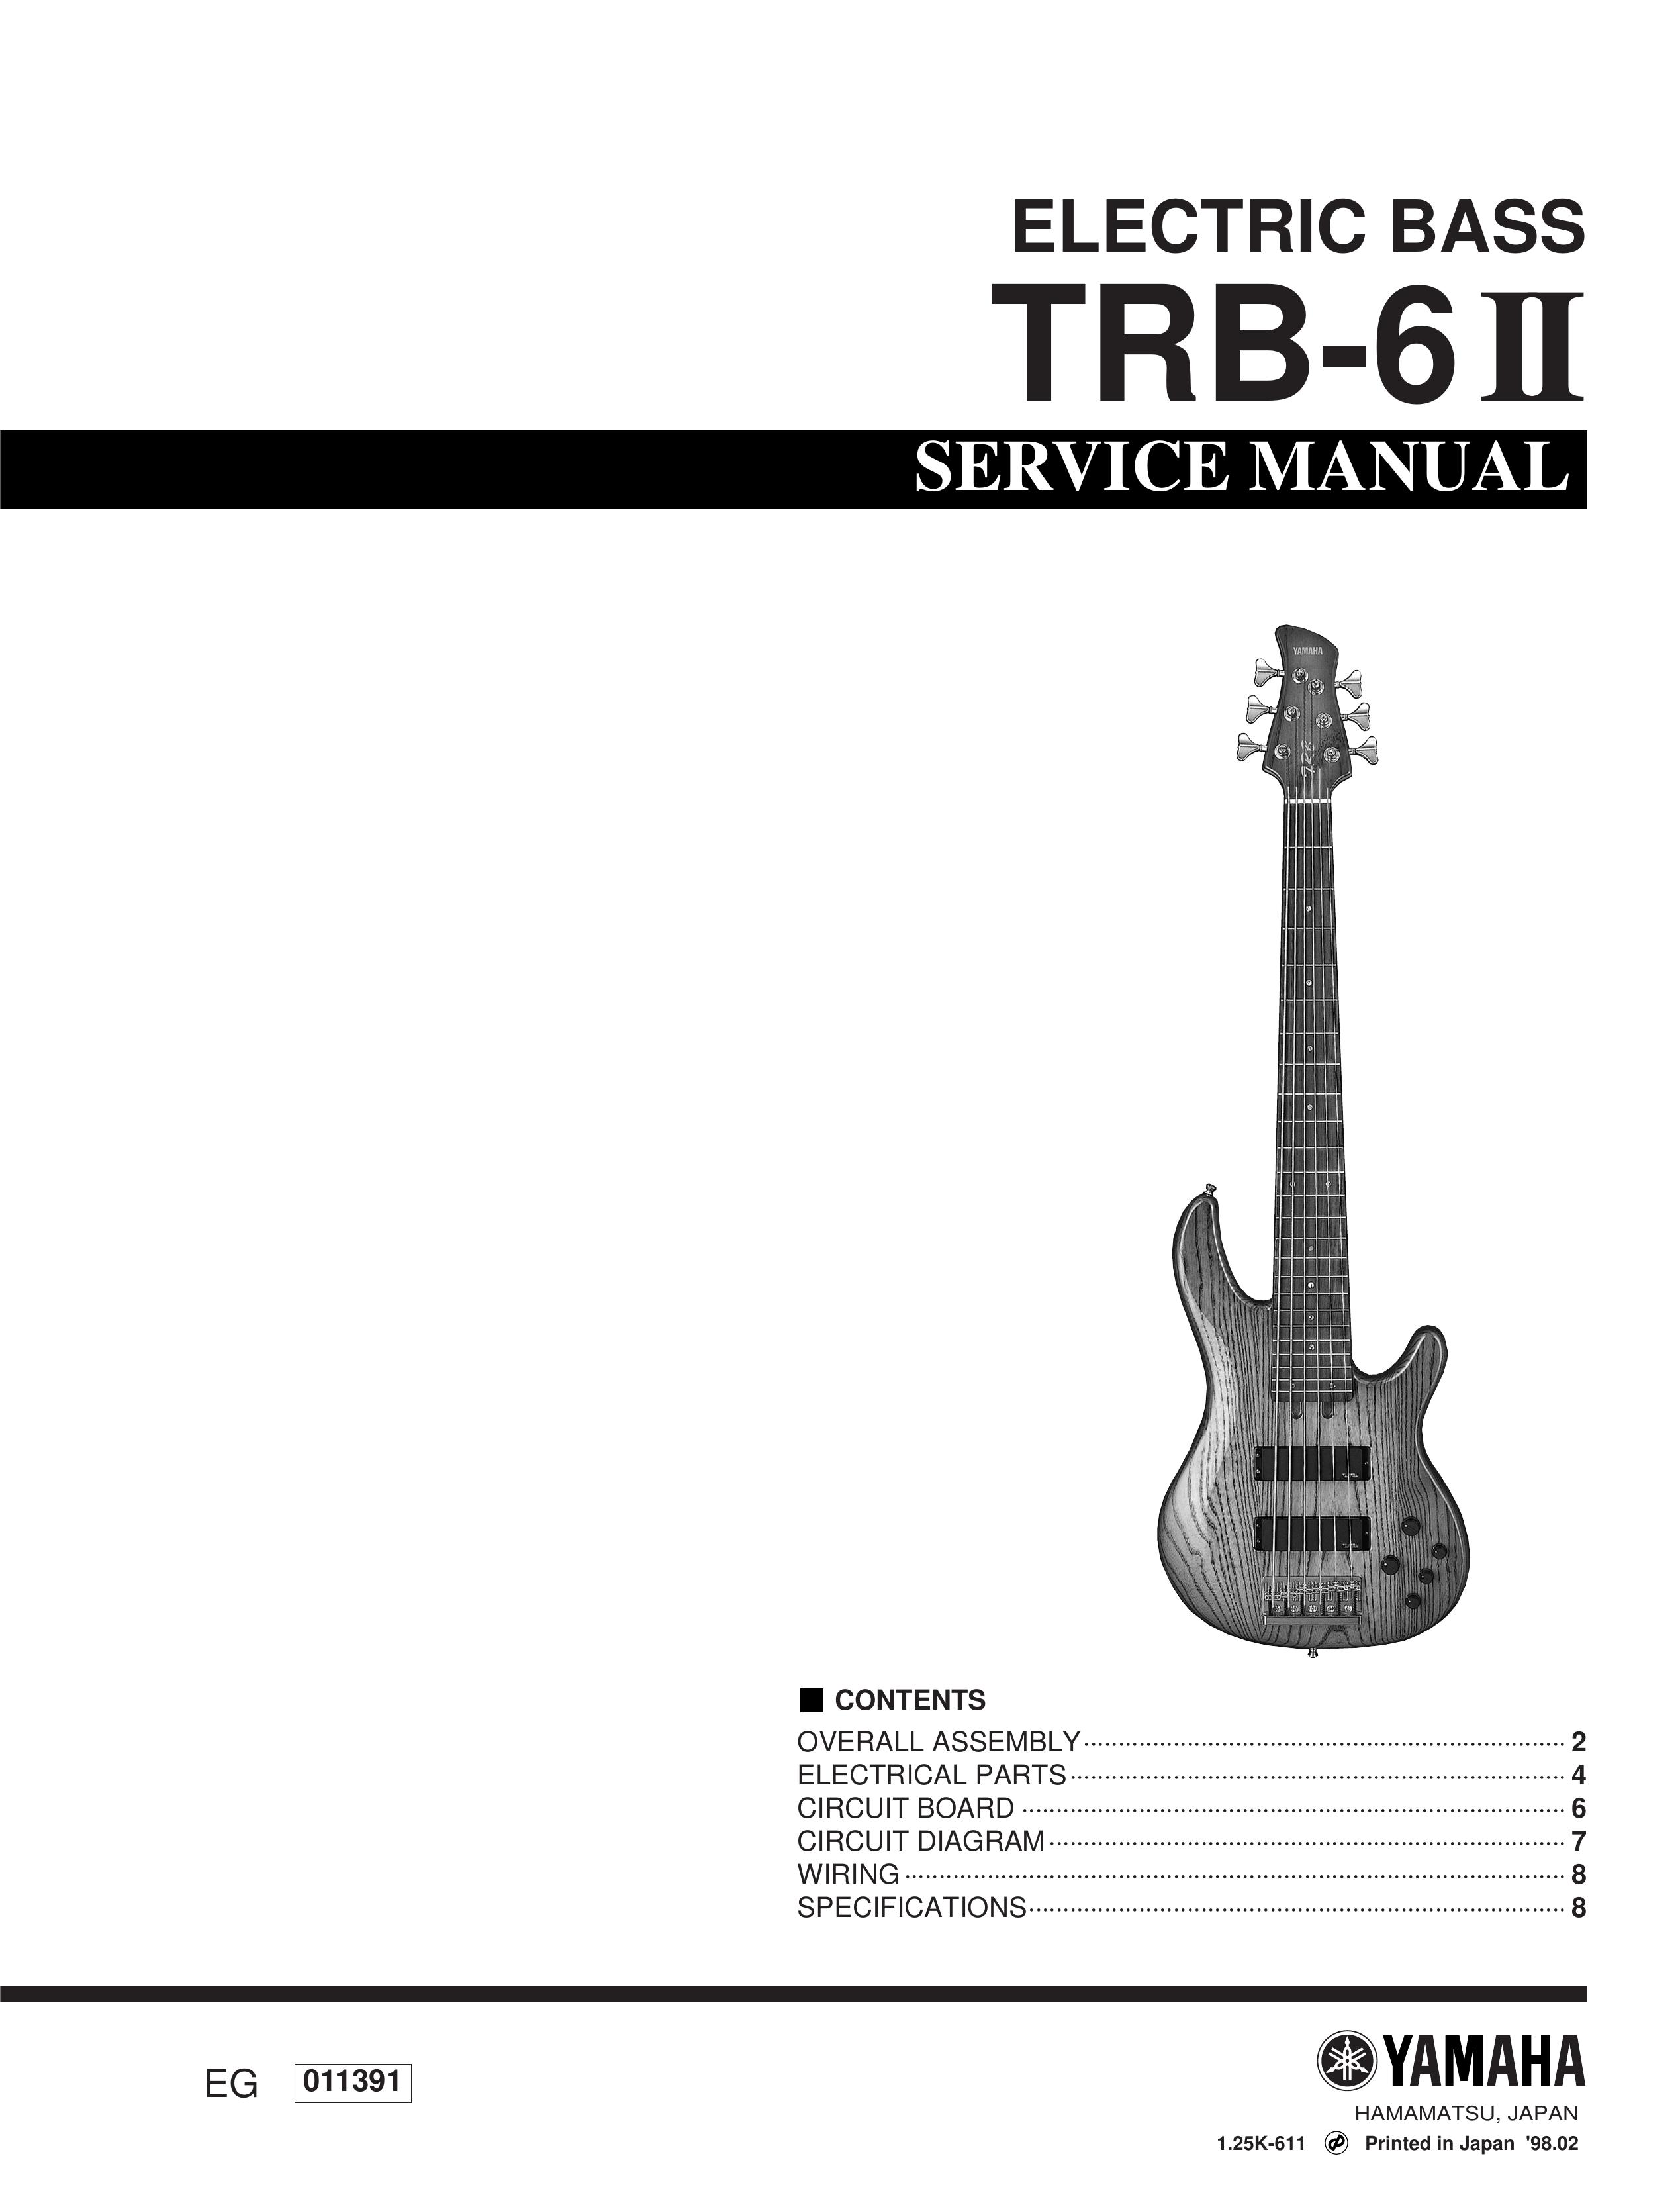 Yamaha ELECTIC BASS TRB-6 2 Guitar User Manual